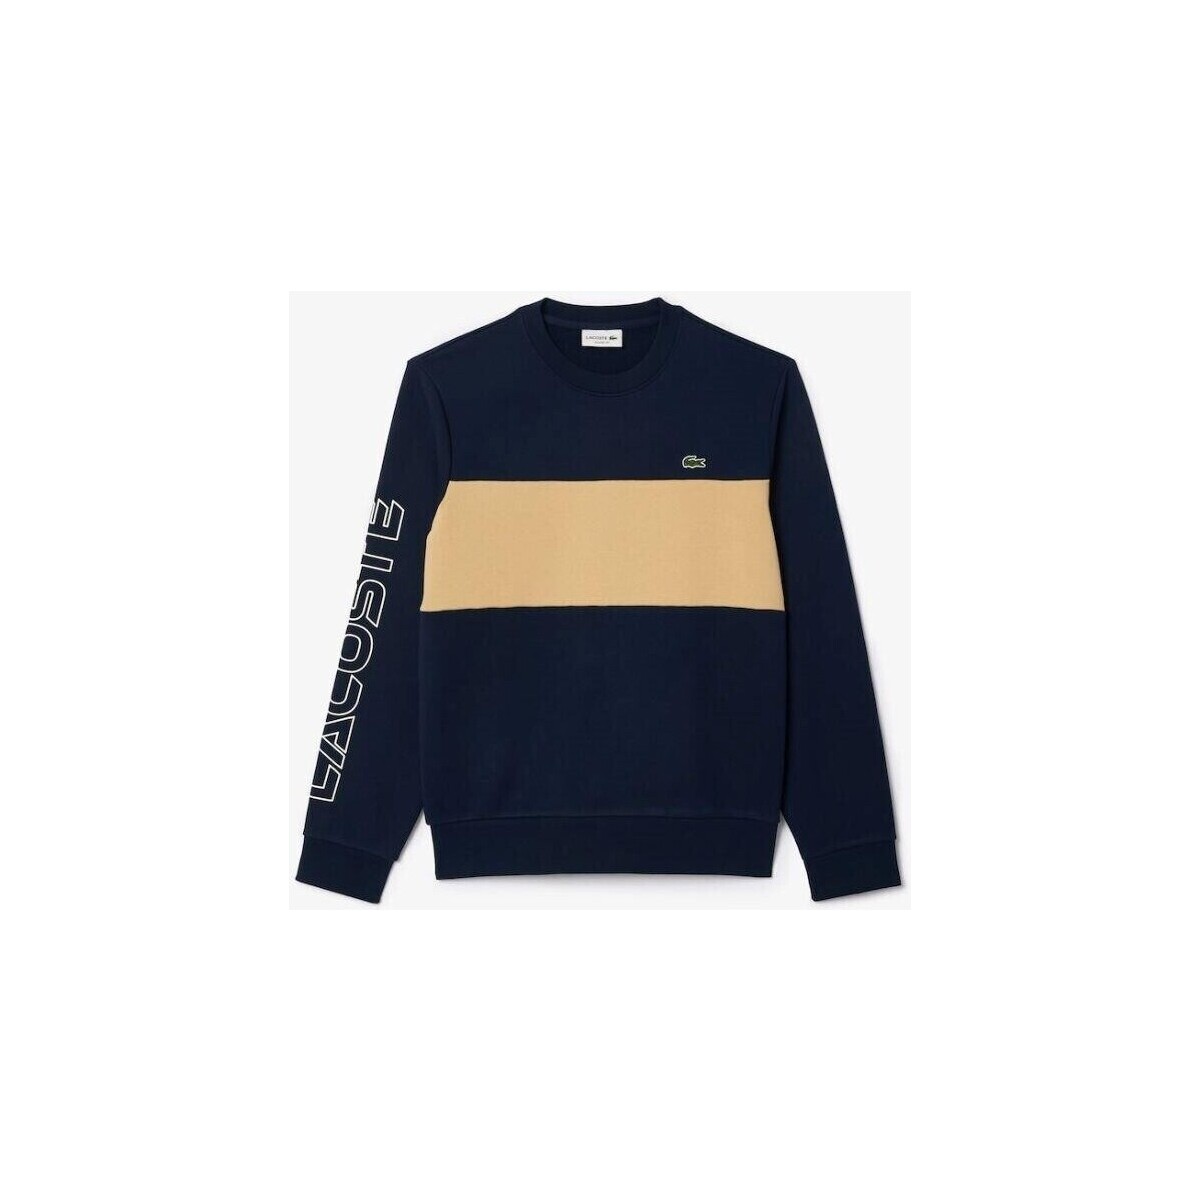 Textiel Heren Sweaters / Sweatshirts Lacoste SH1433 Blauw